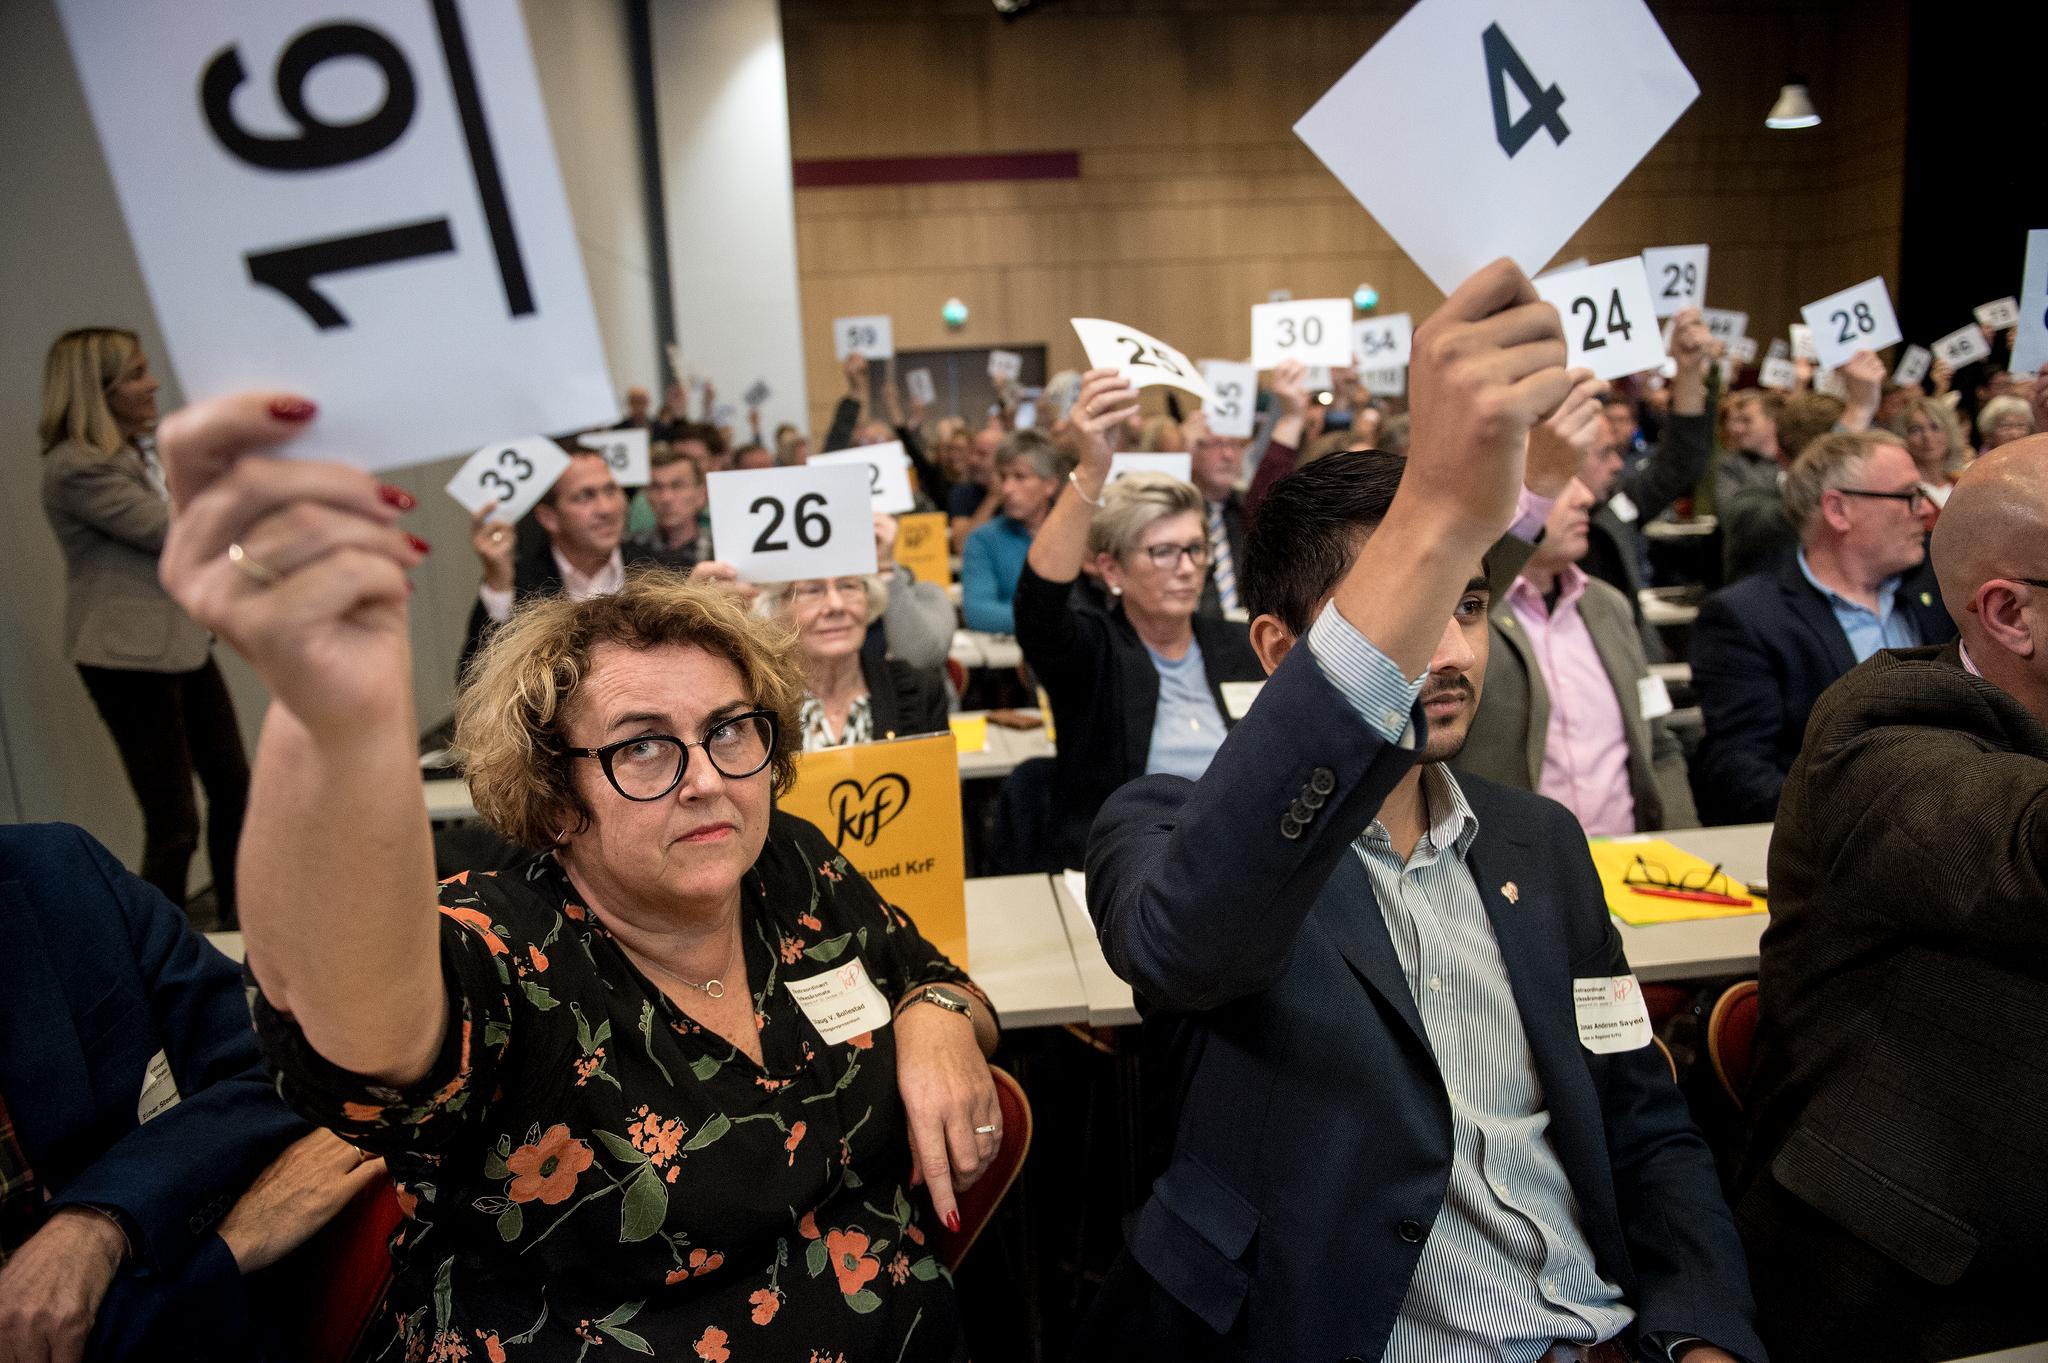 Lørdag holdt Rogaland KrF holder fylkesårsmøte i forkant av partiets ekstraordinære landsmøte 2. november. Nestleder Olaug Bollestad til venstre i bildet.